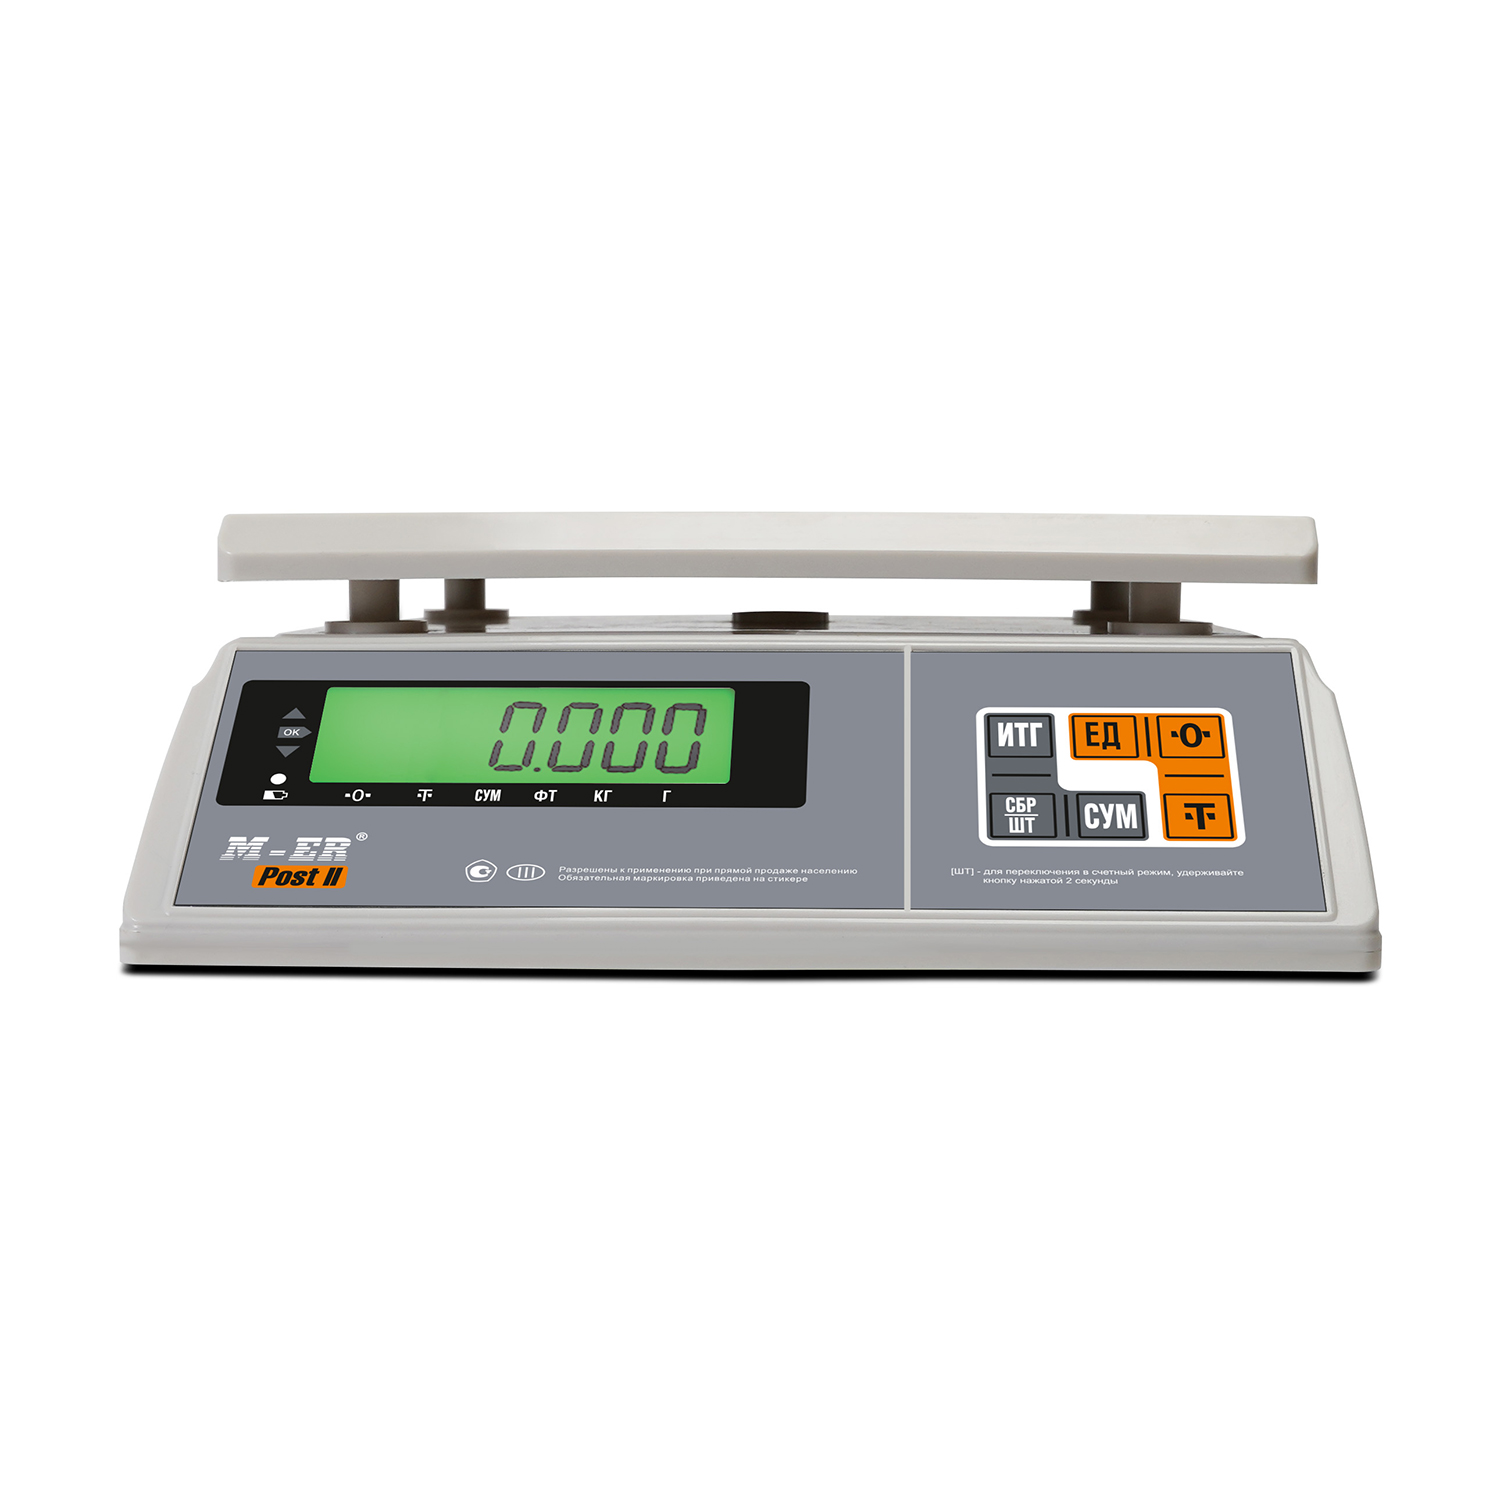 Порционные весы M-ER 326 AFU-3.01 "Post II" LCD (3058)